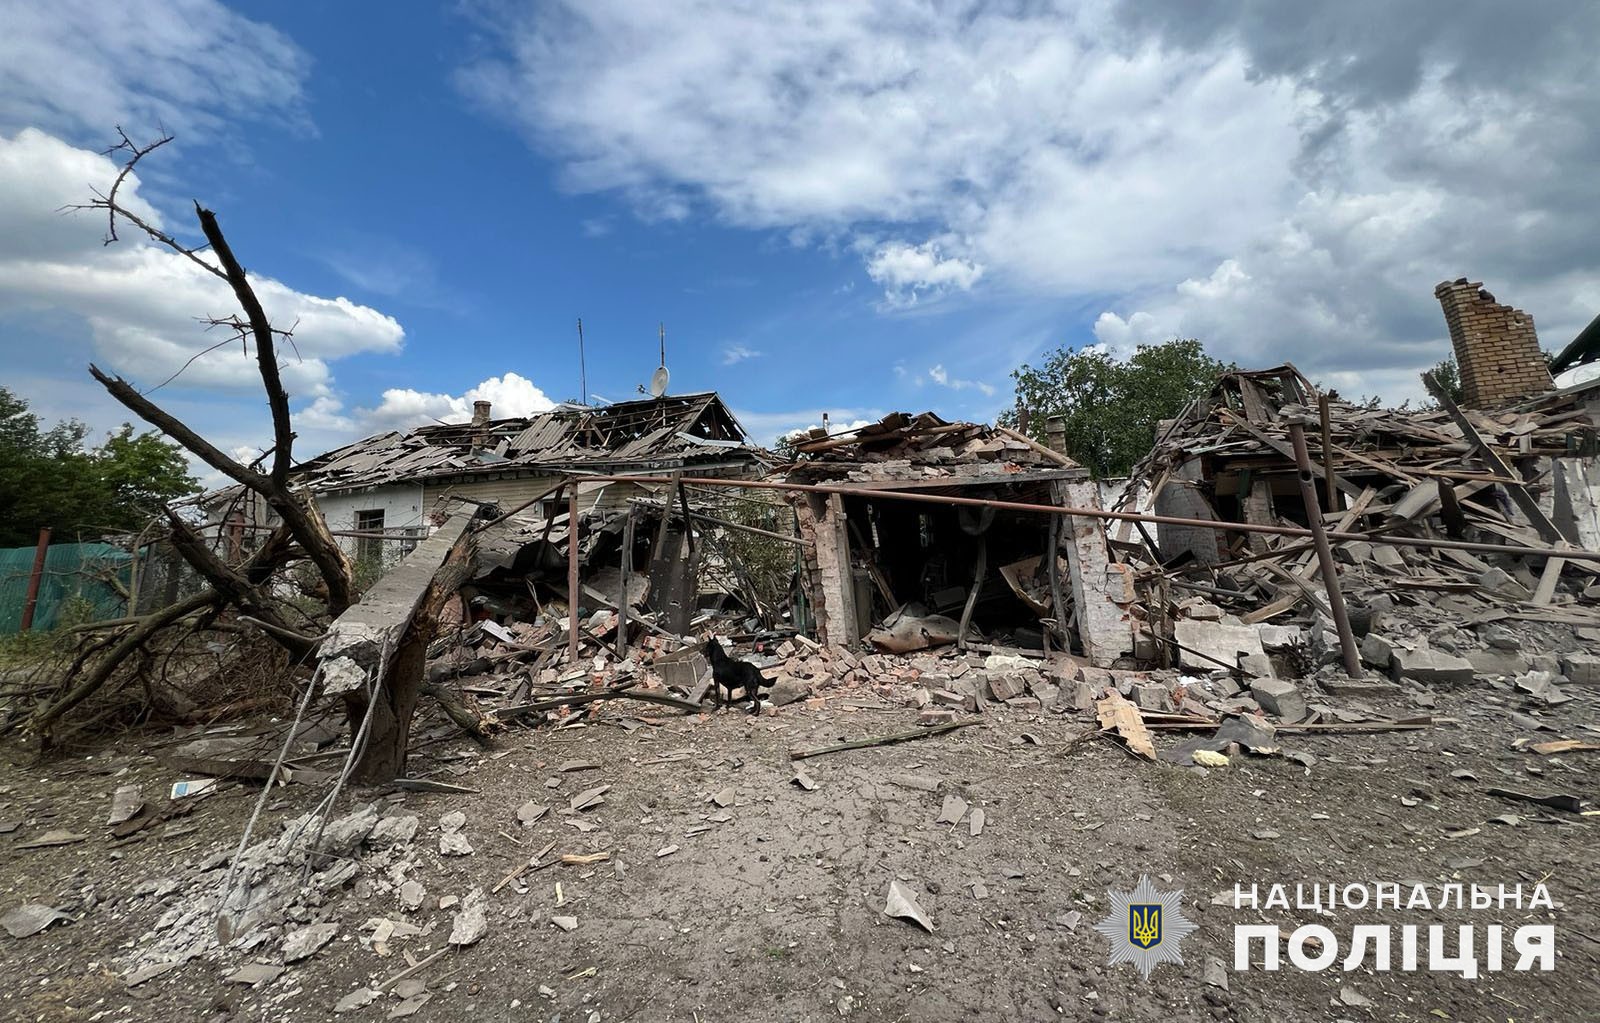 Одна загибла людина та 14 поранених: загарбники продовжують бити по Донеччині. Як минуло 26 червня в регіоні (ЗВЕДЕННЯ, ФОТО) 1